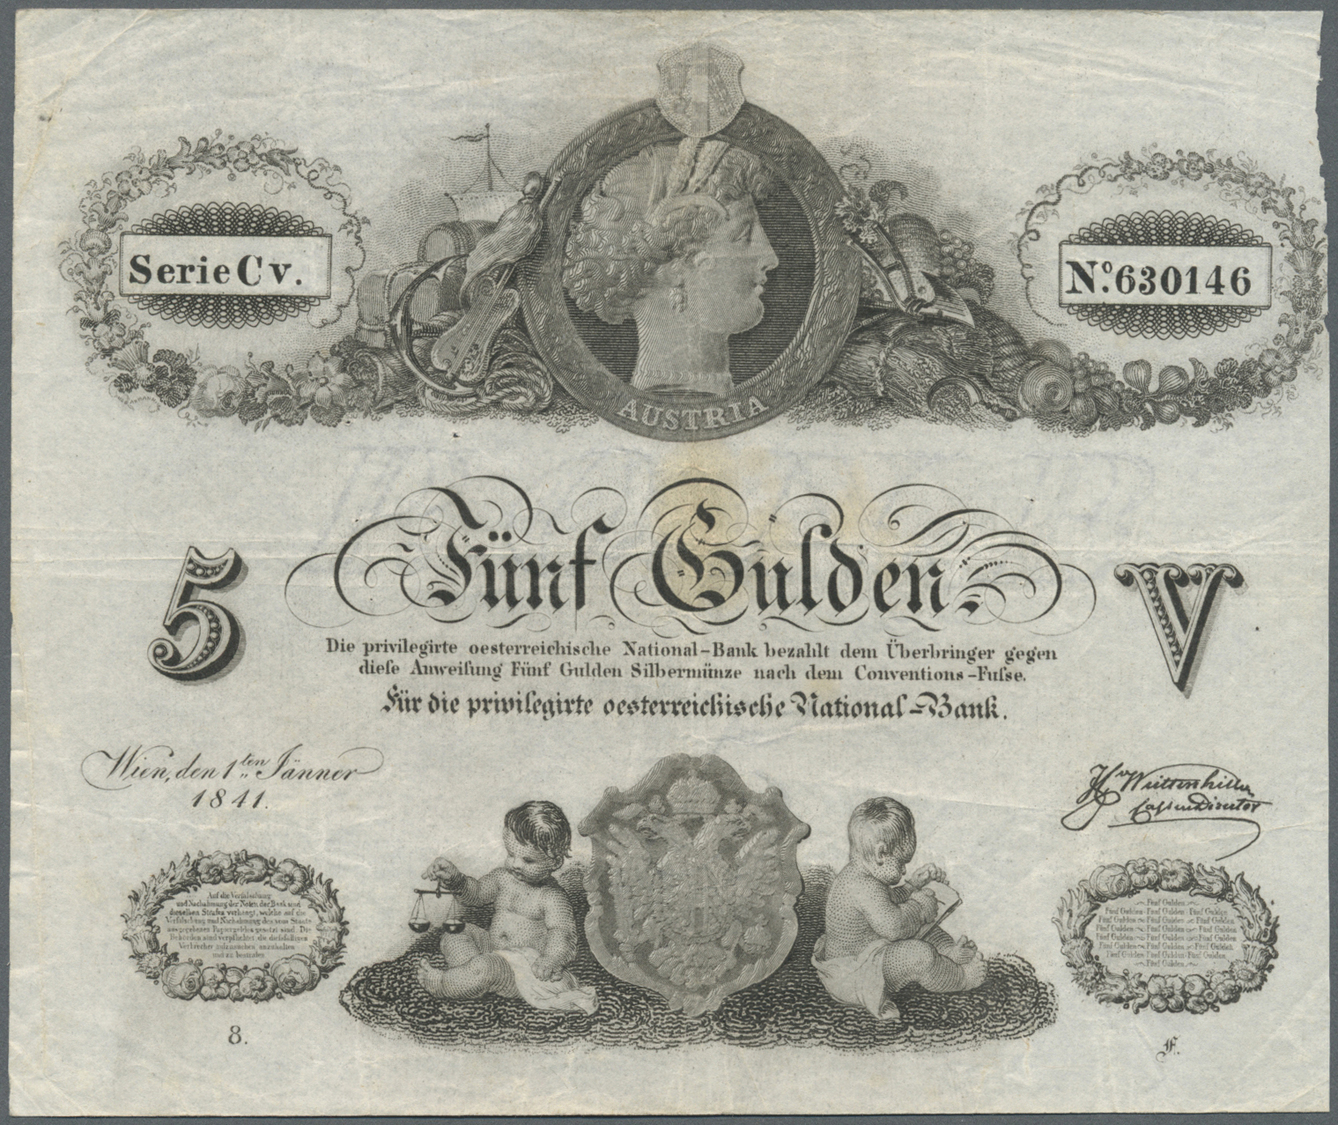 00119 Austria / Österreich:  Privilegirte Oesterreichische National-Bank 5 Gulden 1841, P.A70a, Very Nice Original Shape - Austria